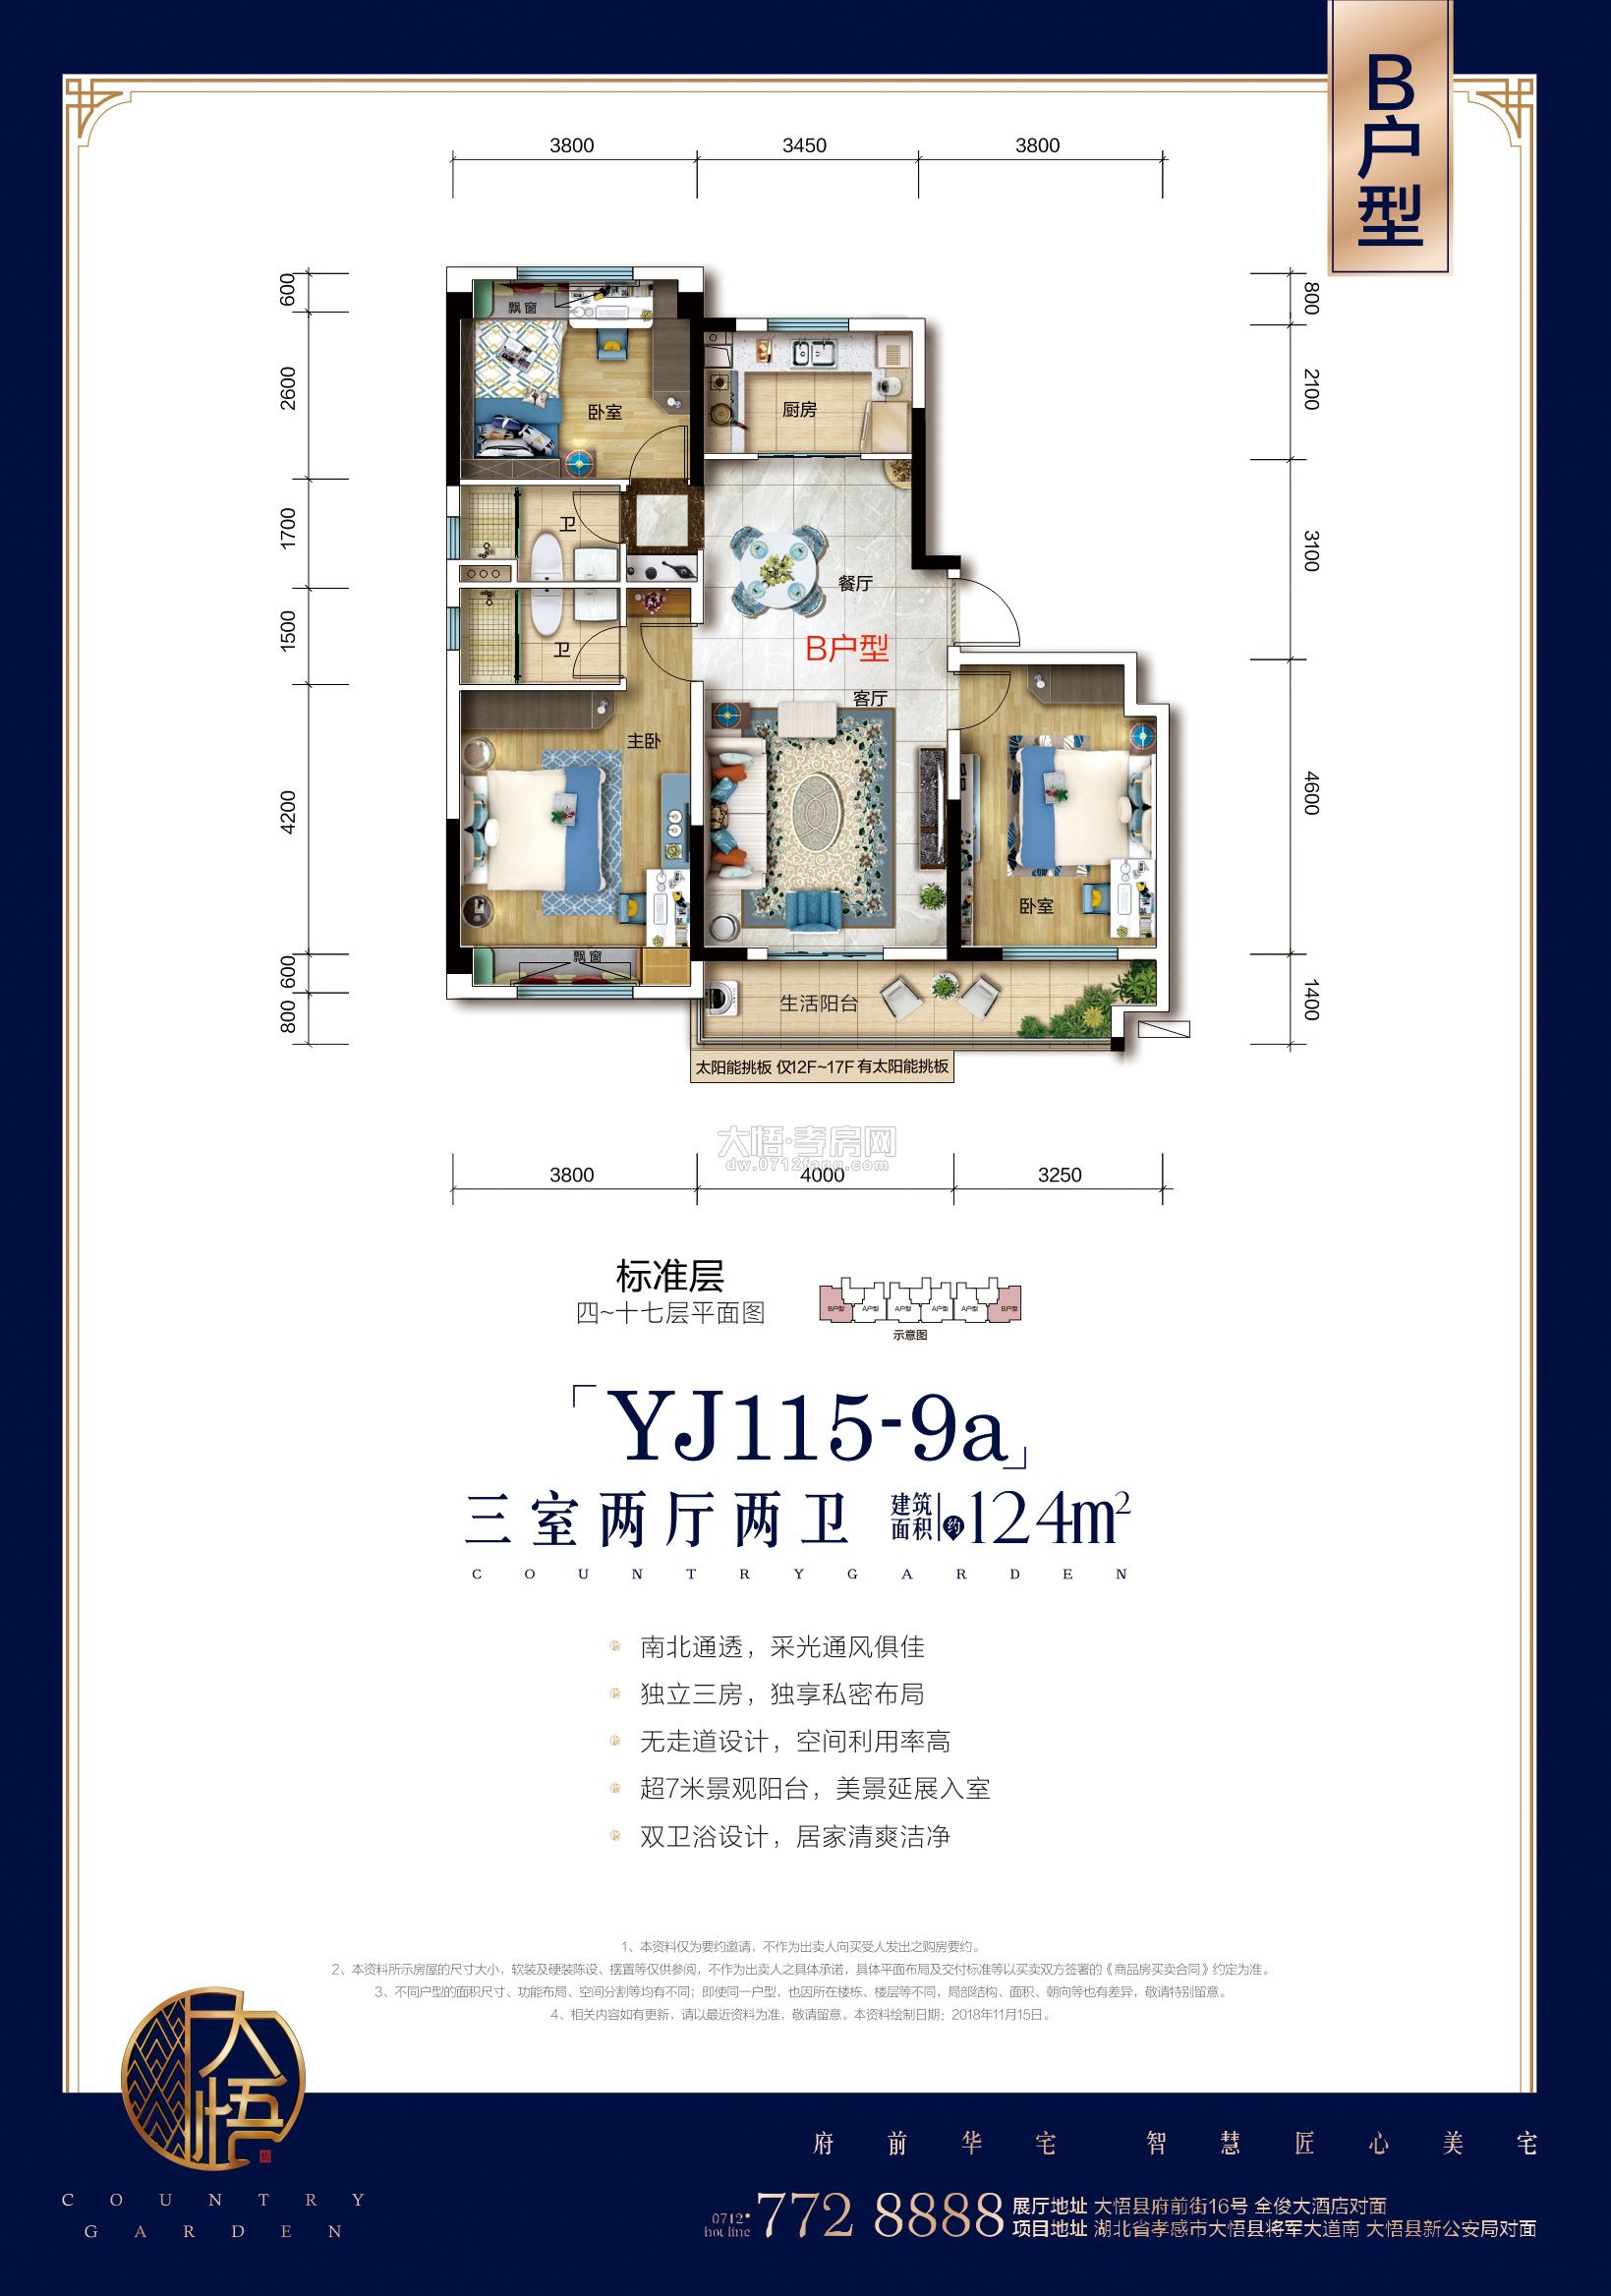 大悟碧桂园YJ115-9a-B户型